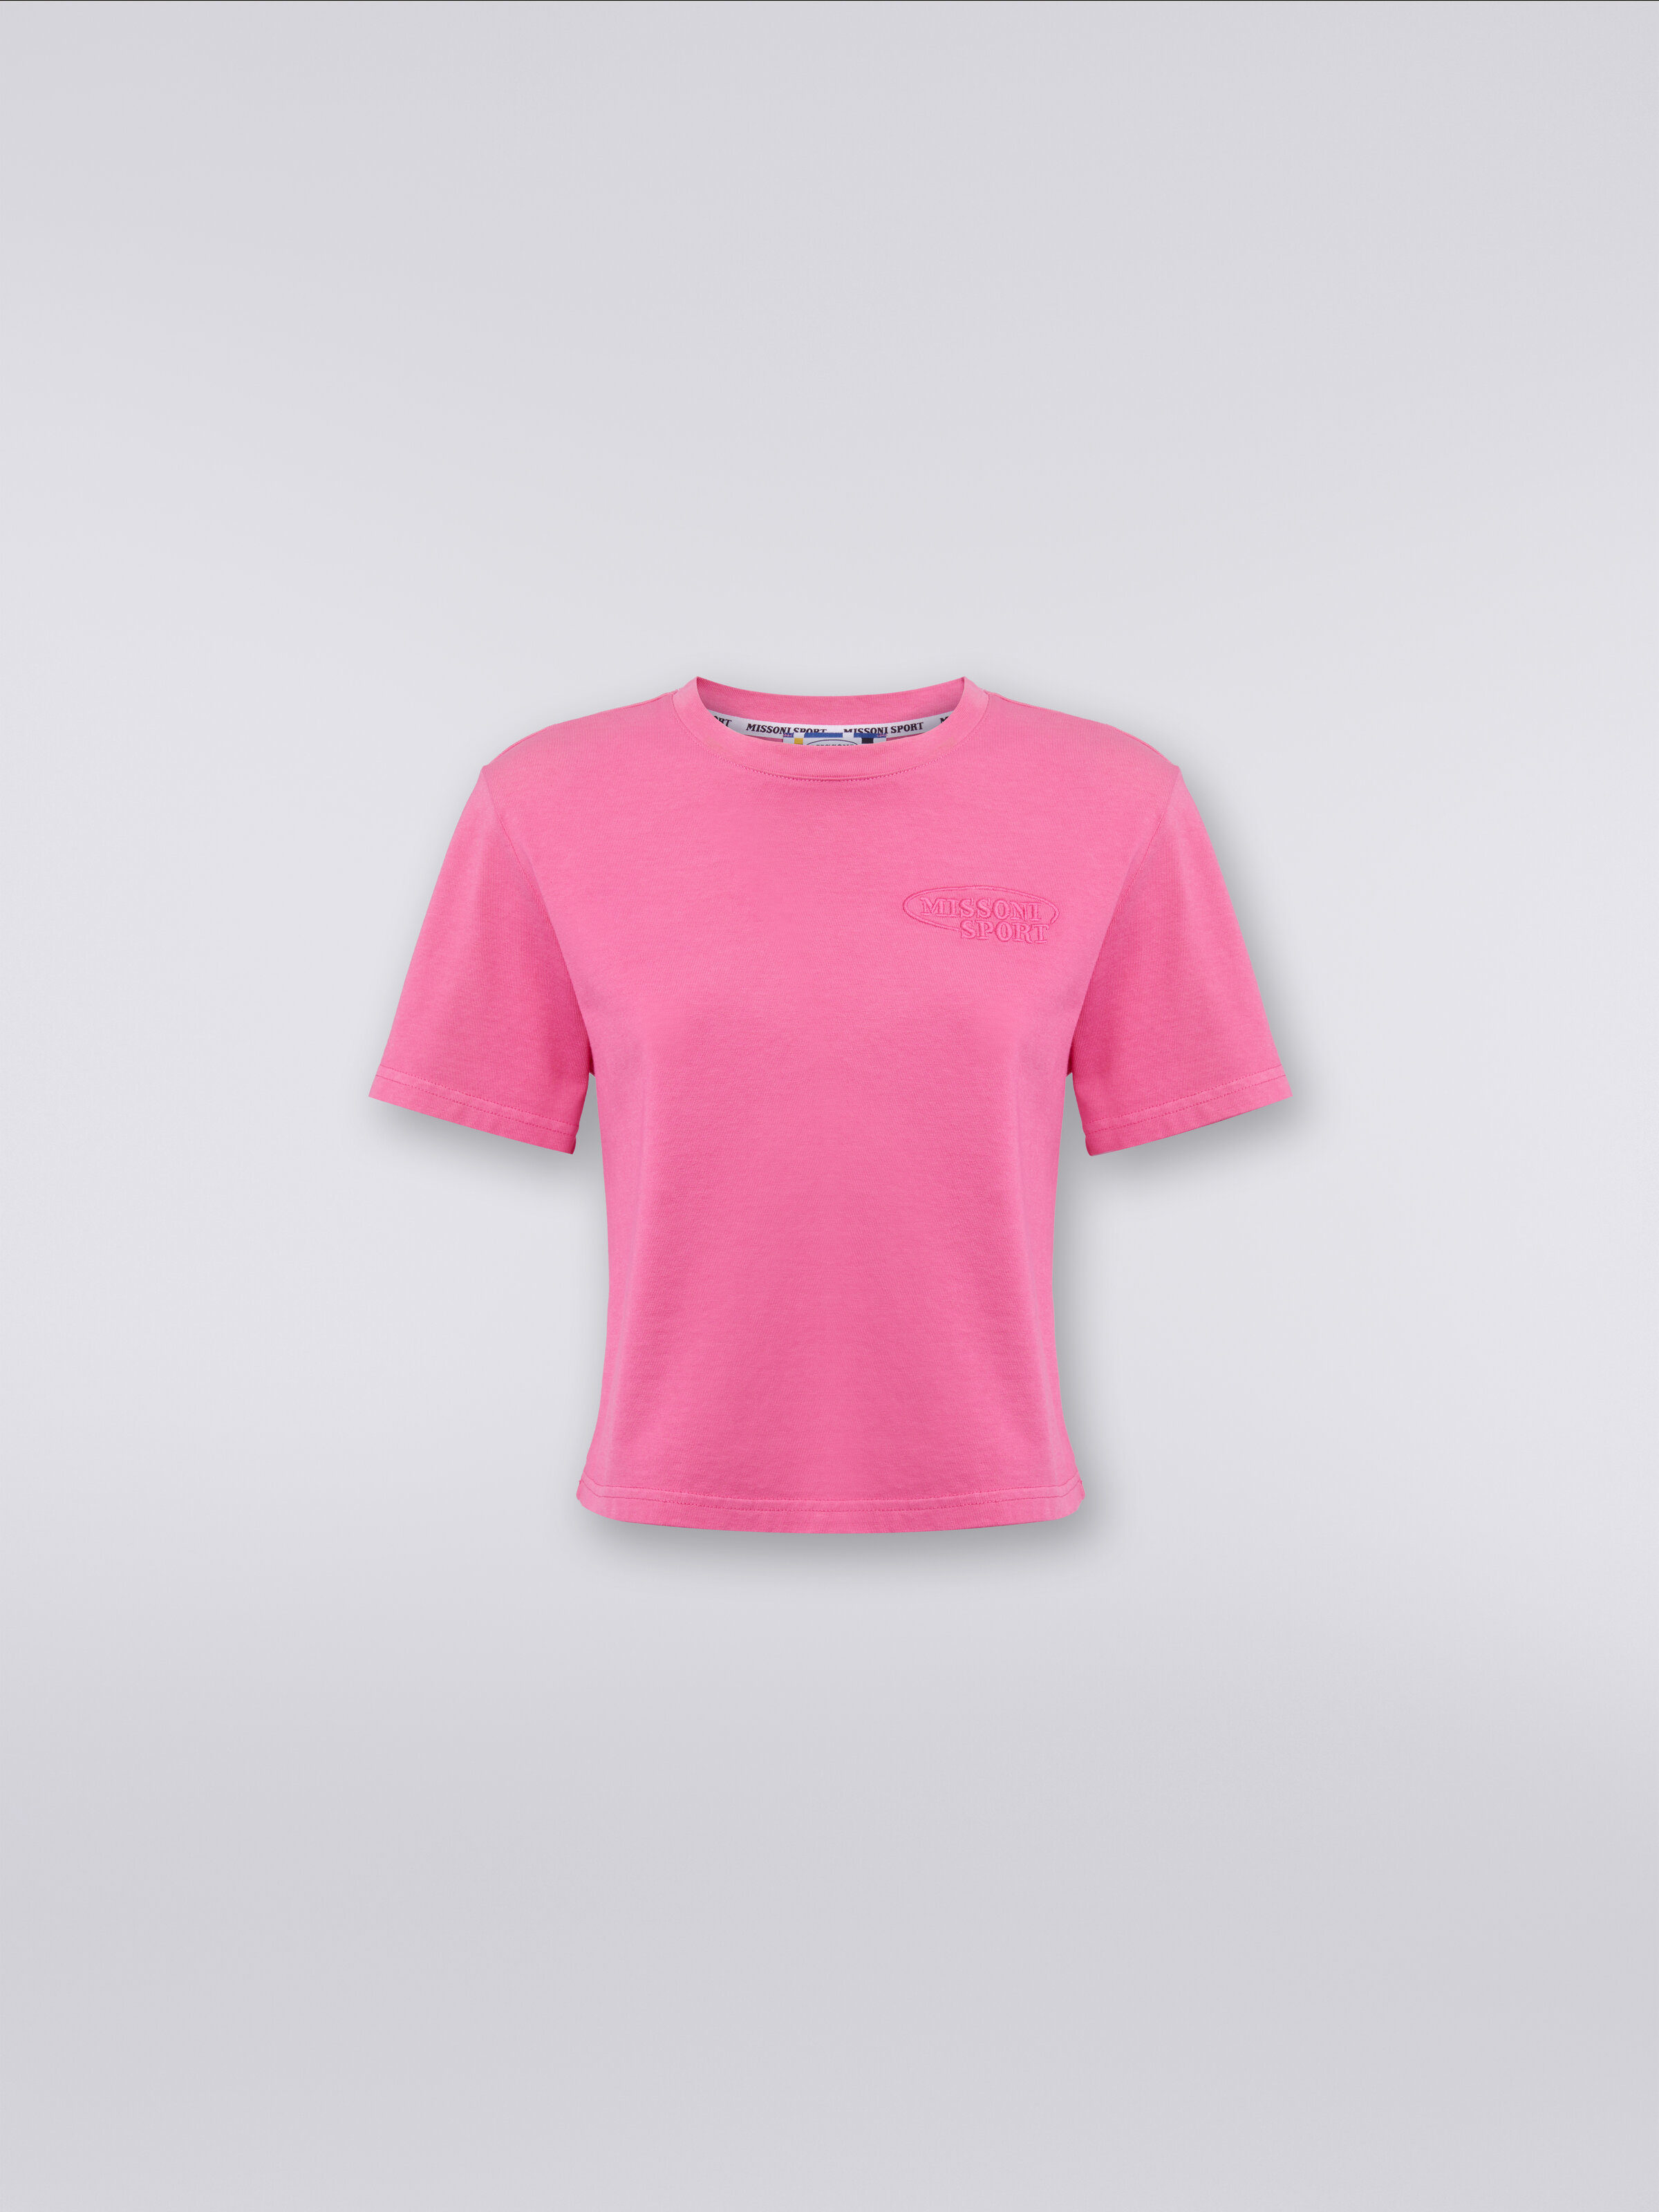 T-shirt girocollo crop in cotone con logo, Rosa   - 0